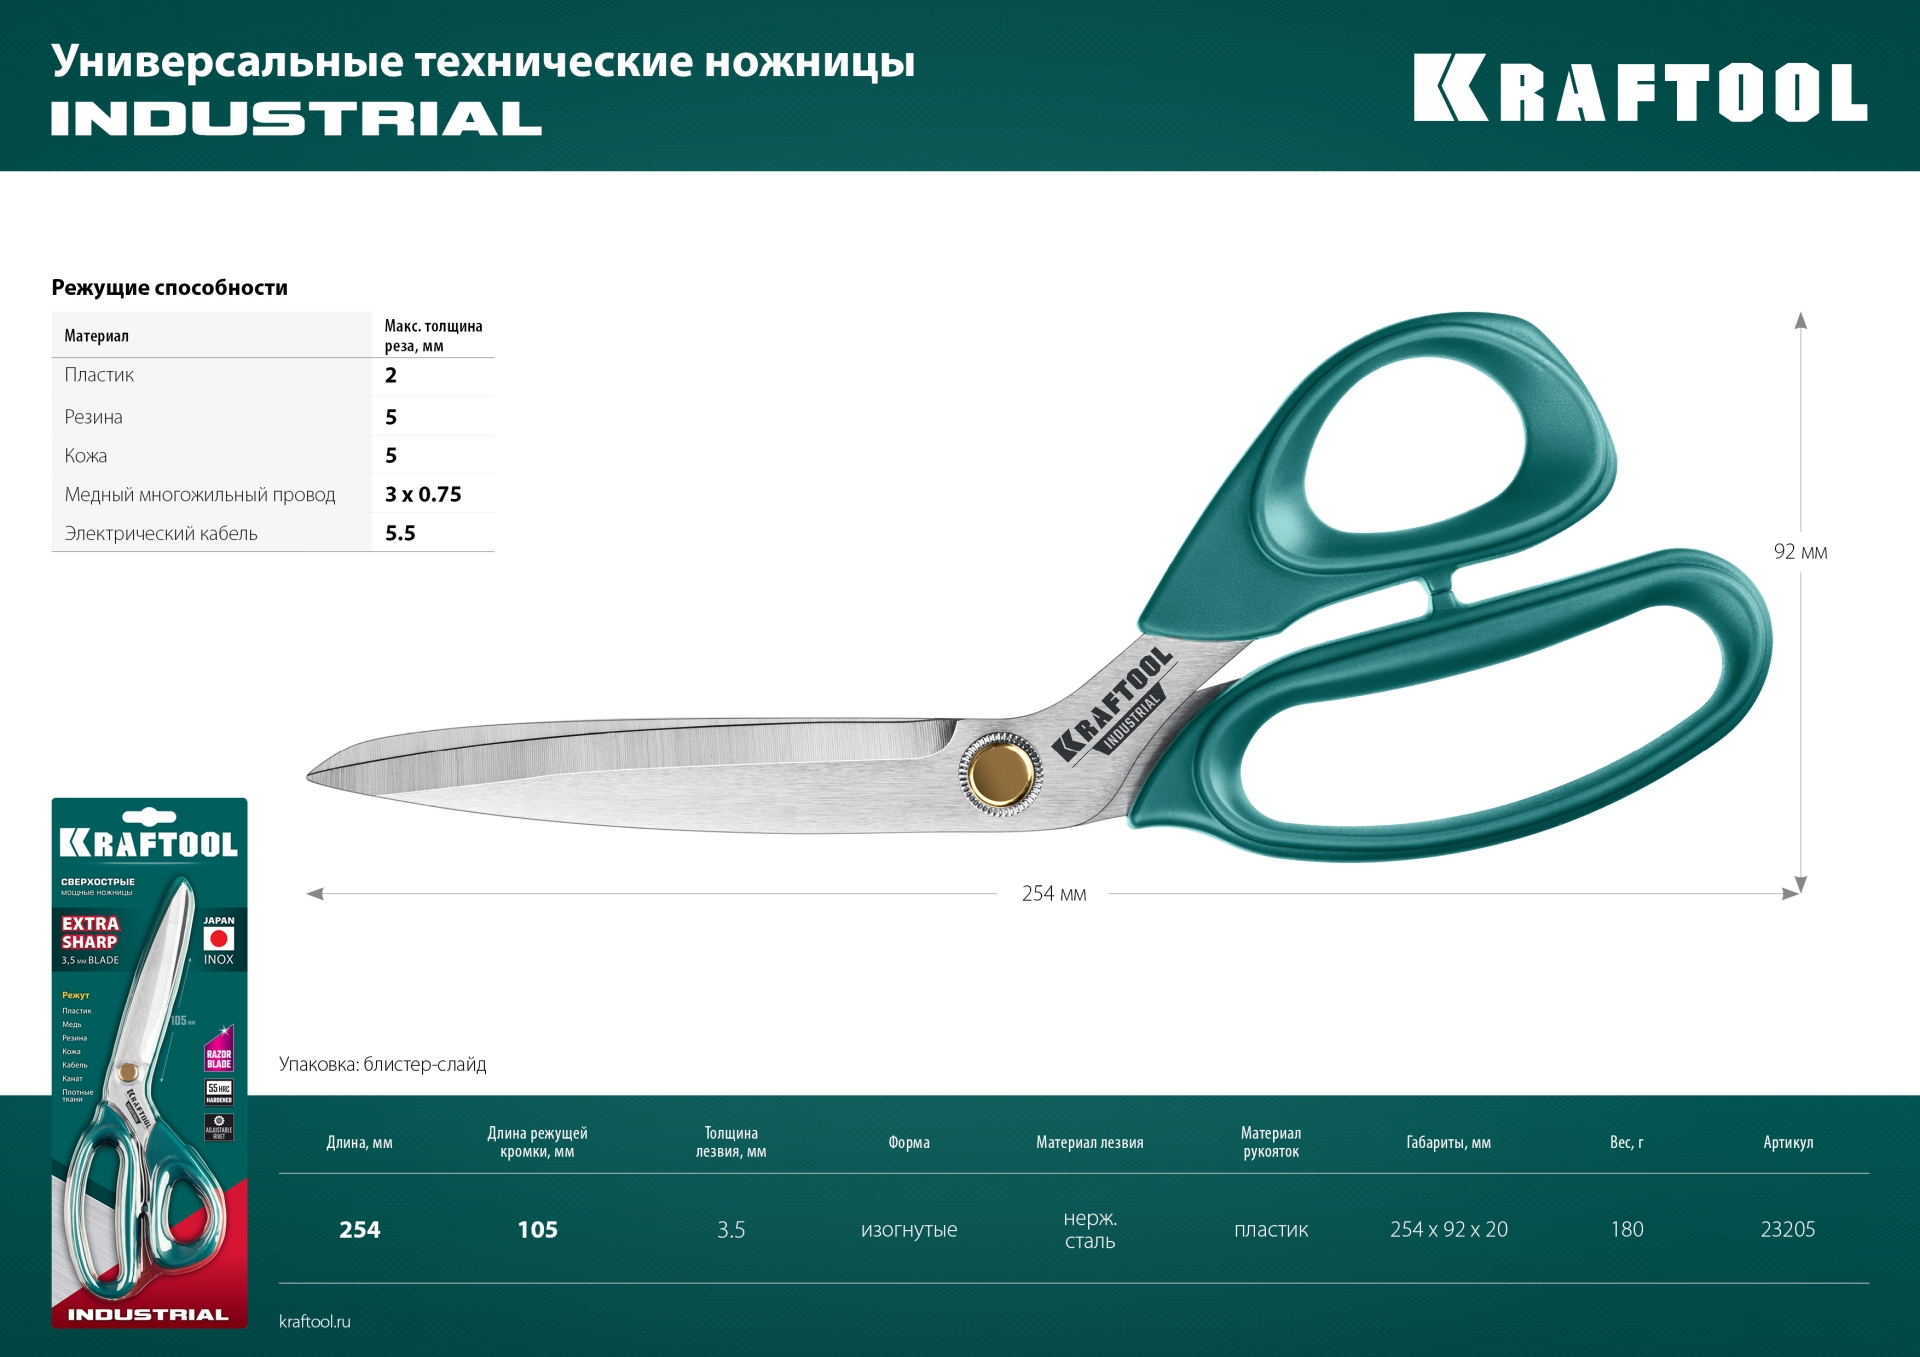 KRAFTOOL 254 мм, универсальные технические ножницы (23205)